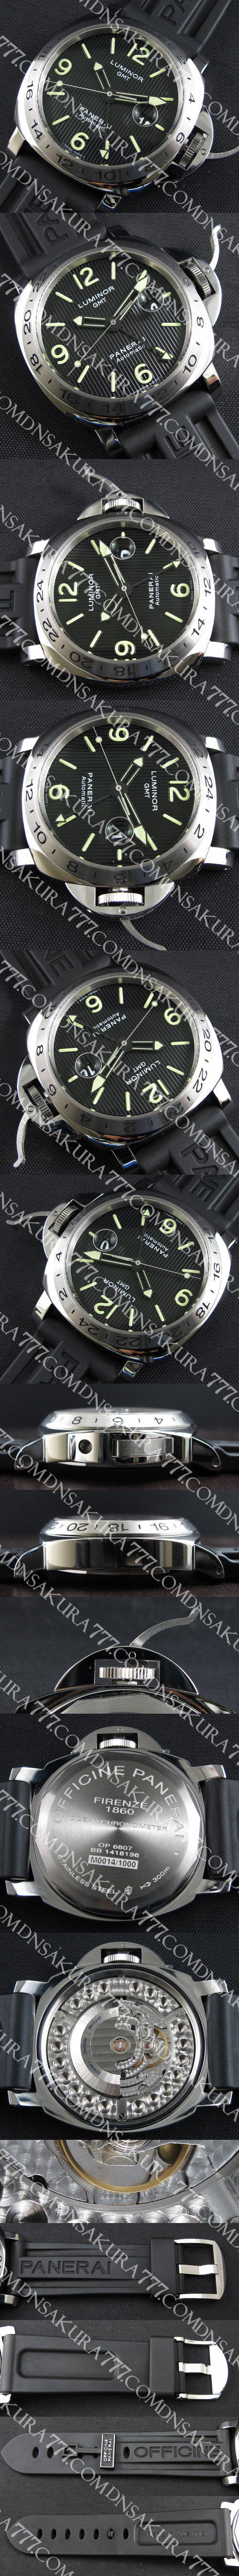 パネライ ルミノール GMT PAM00029腕時計